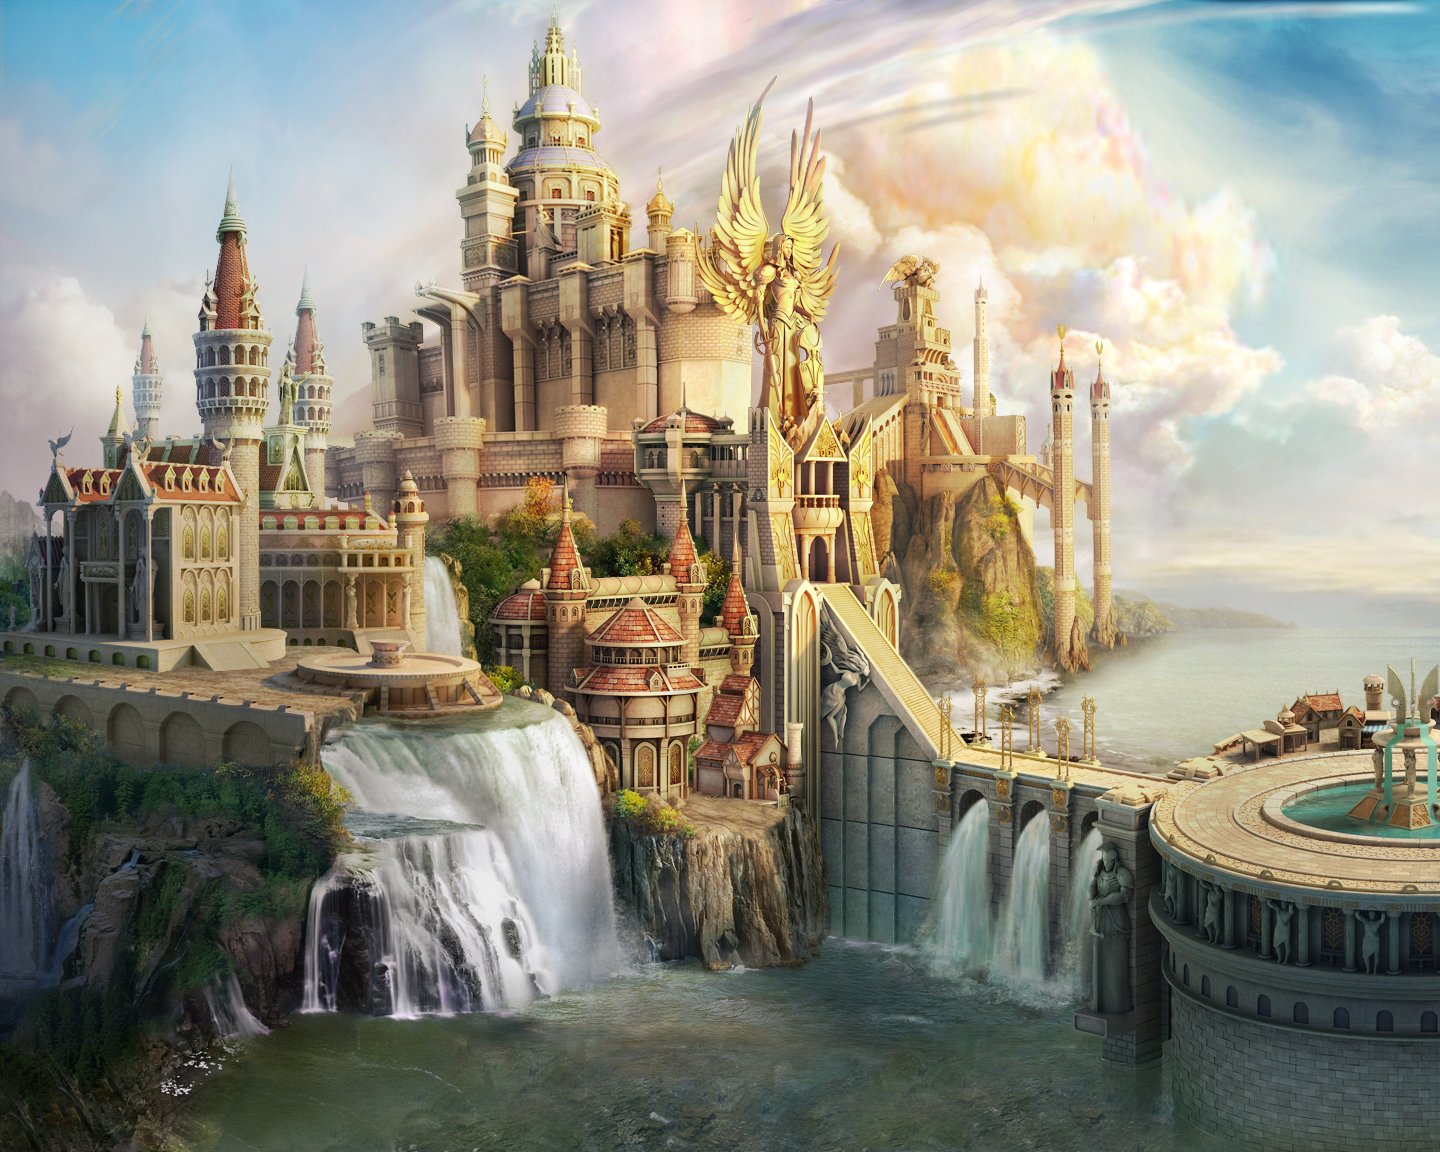 CG Fantasy Castle wallpaper   ForWallpapercom